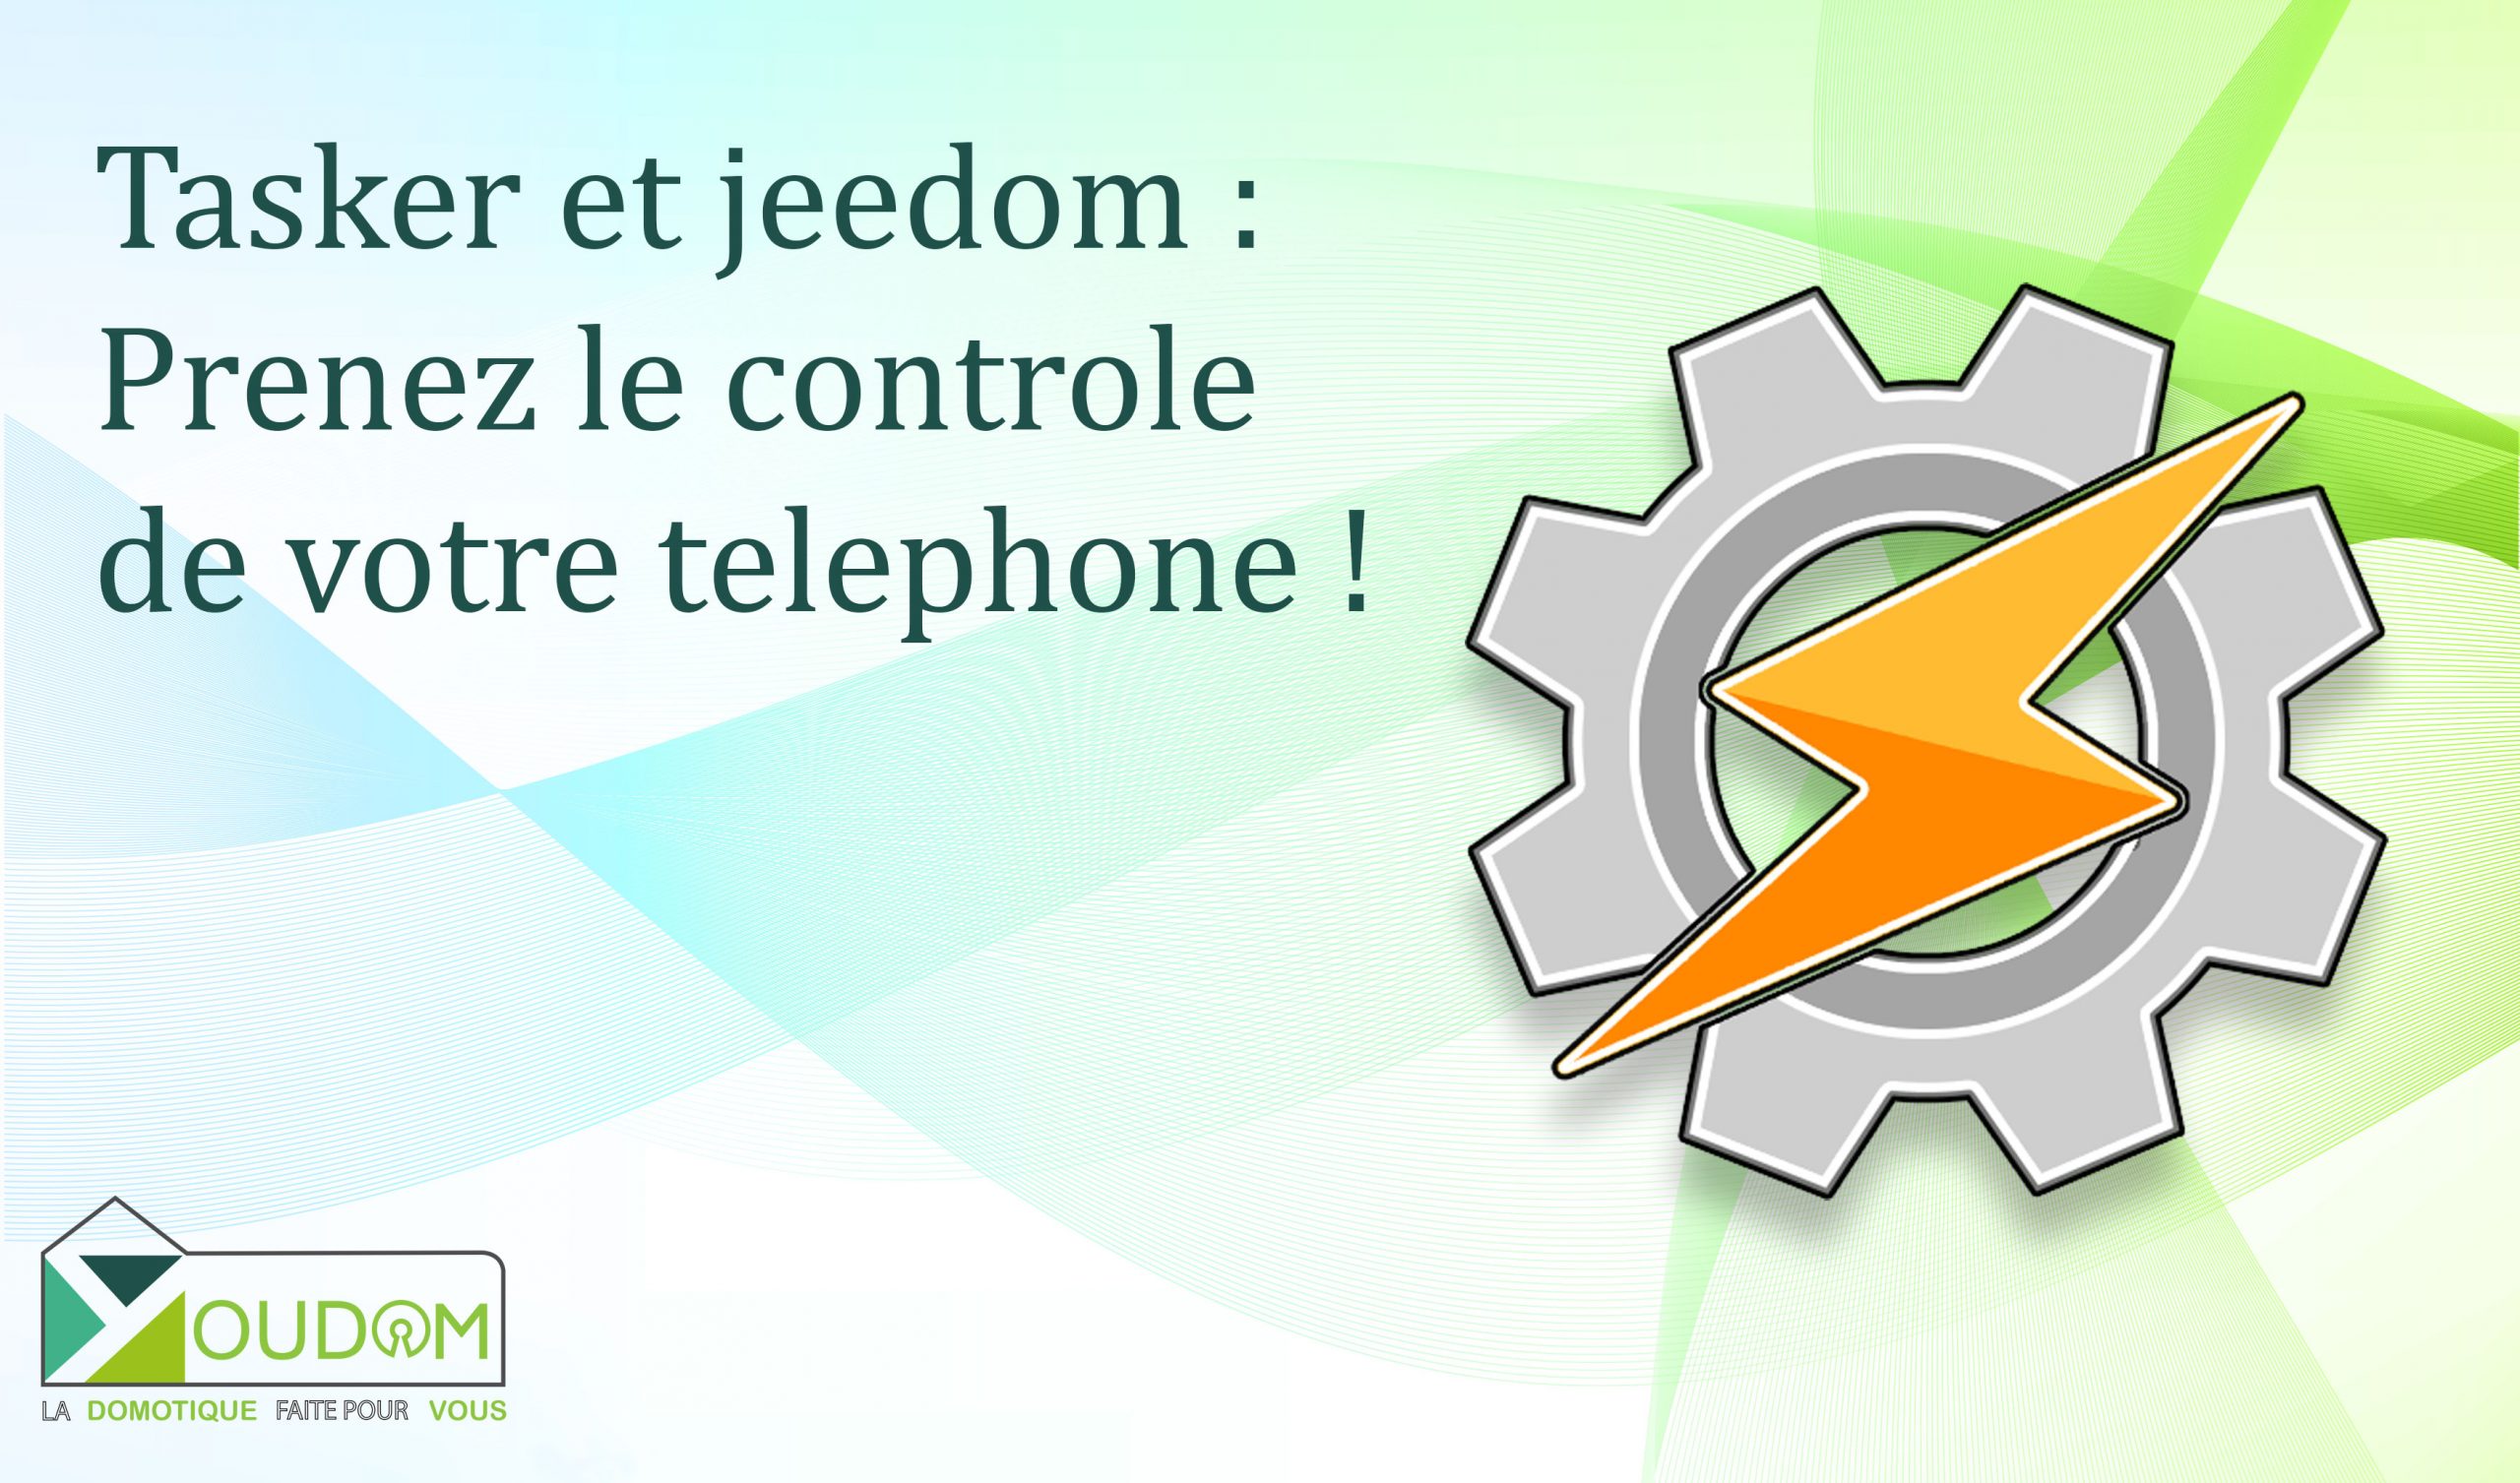 You are currently viewing Tasker et jeedom : Prenez le controle de votre telephone !